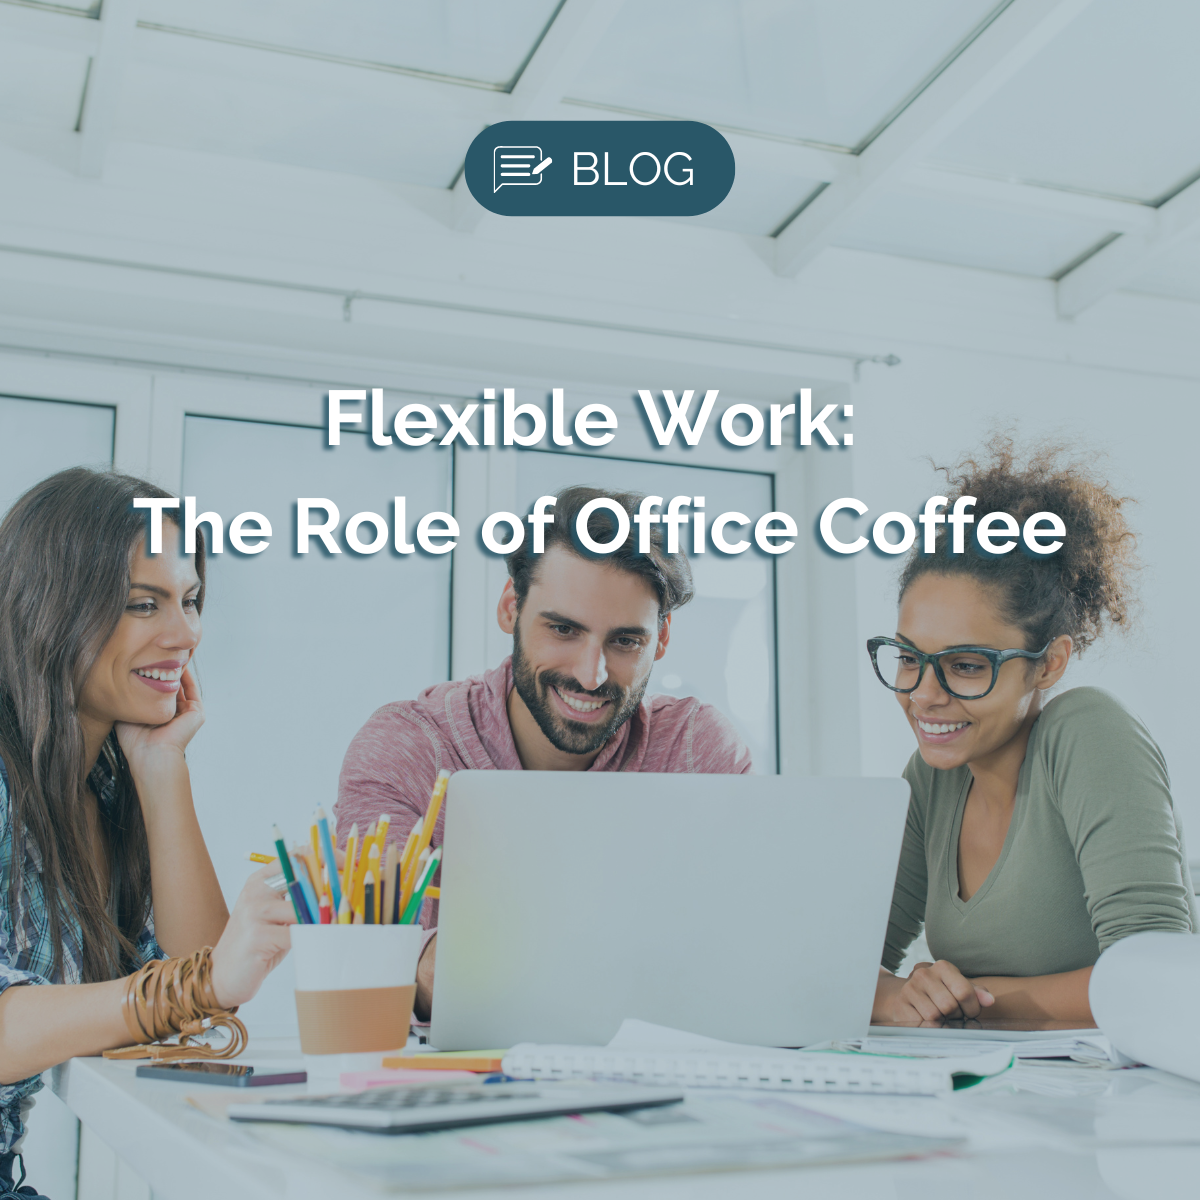 Office Coffee Service Flexible Work